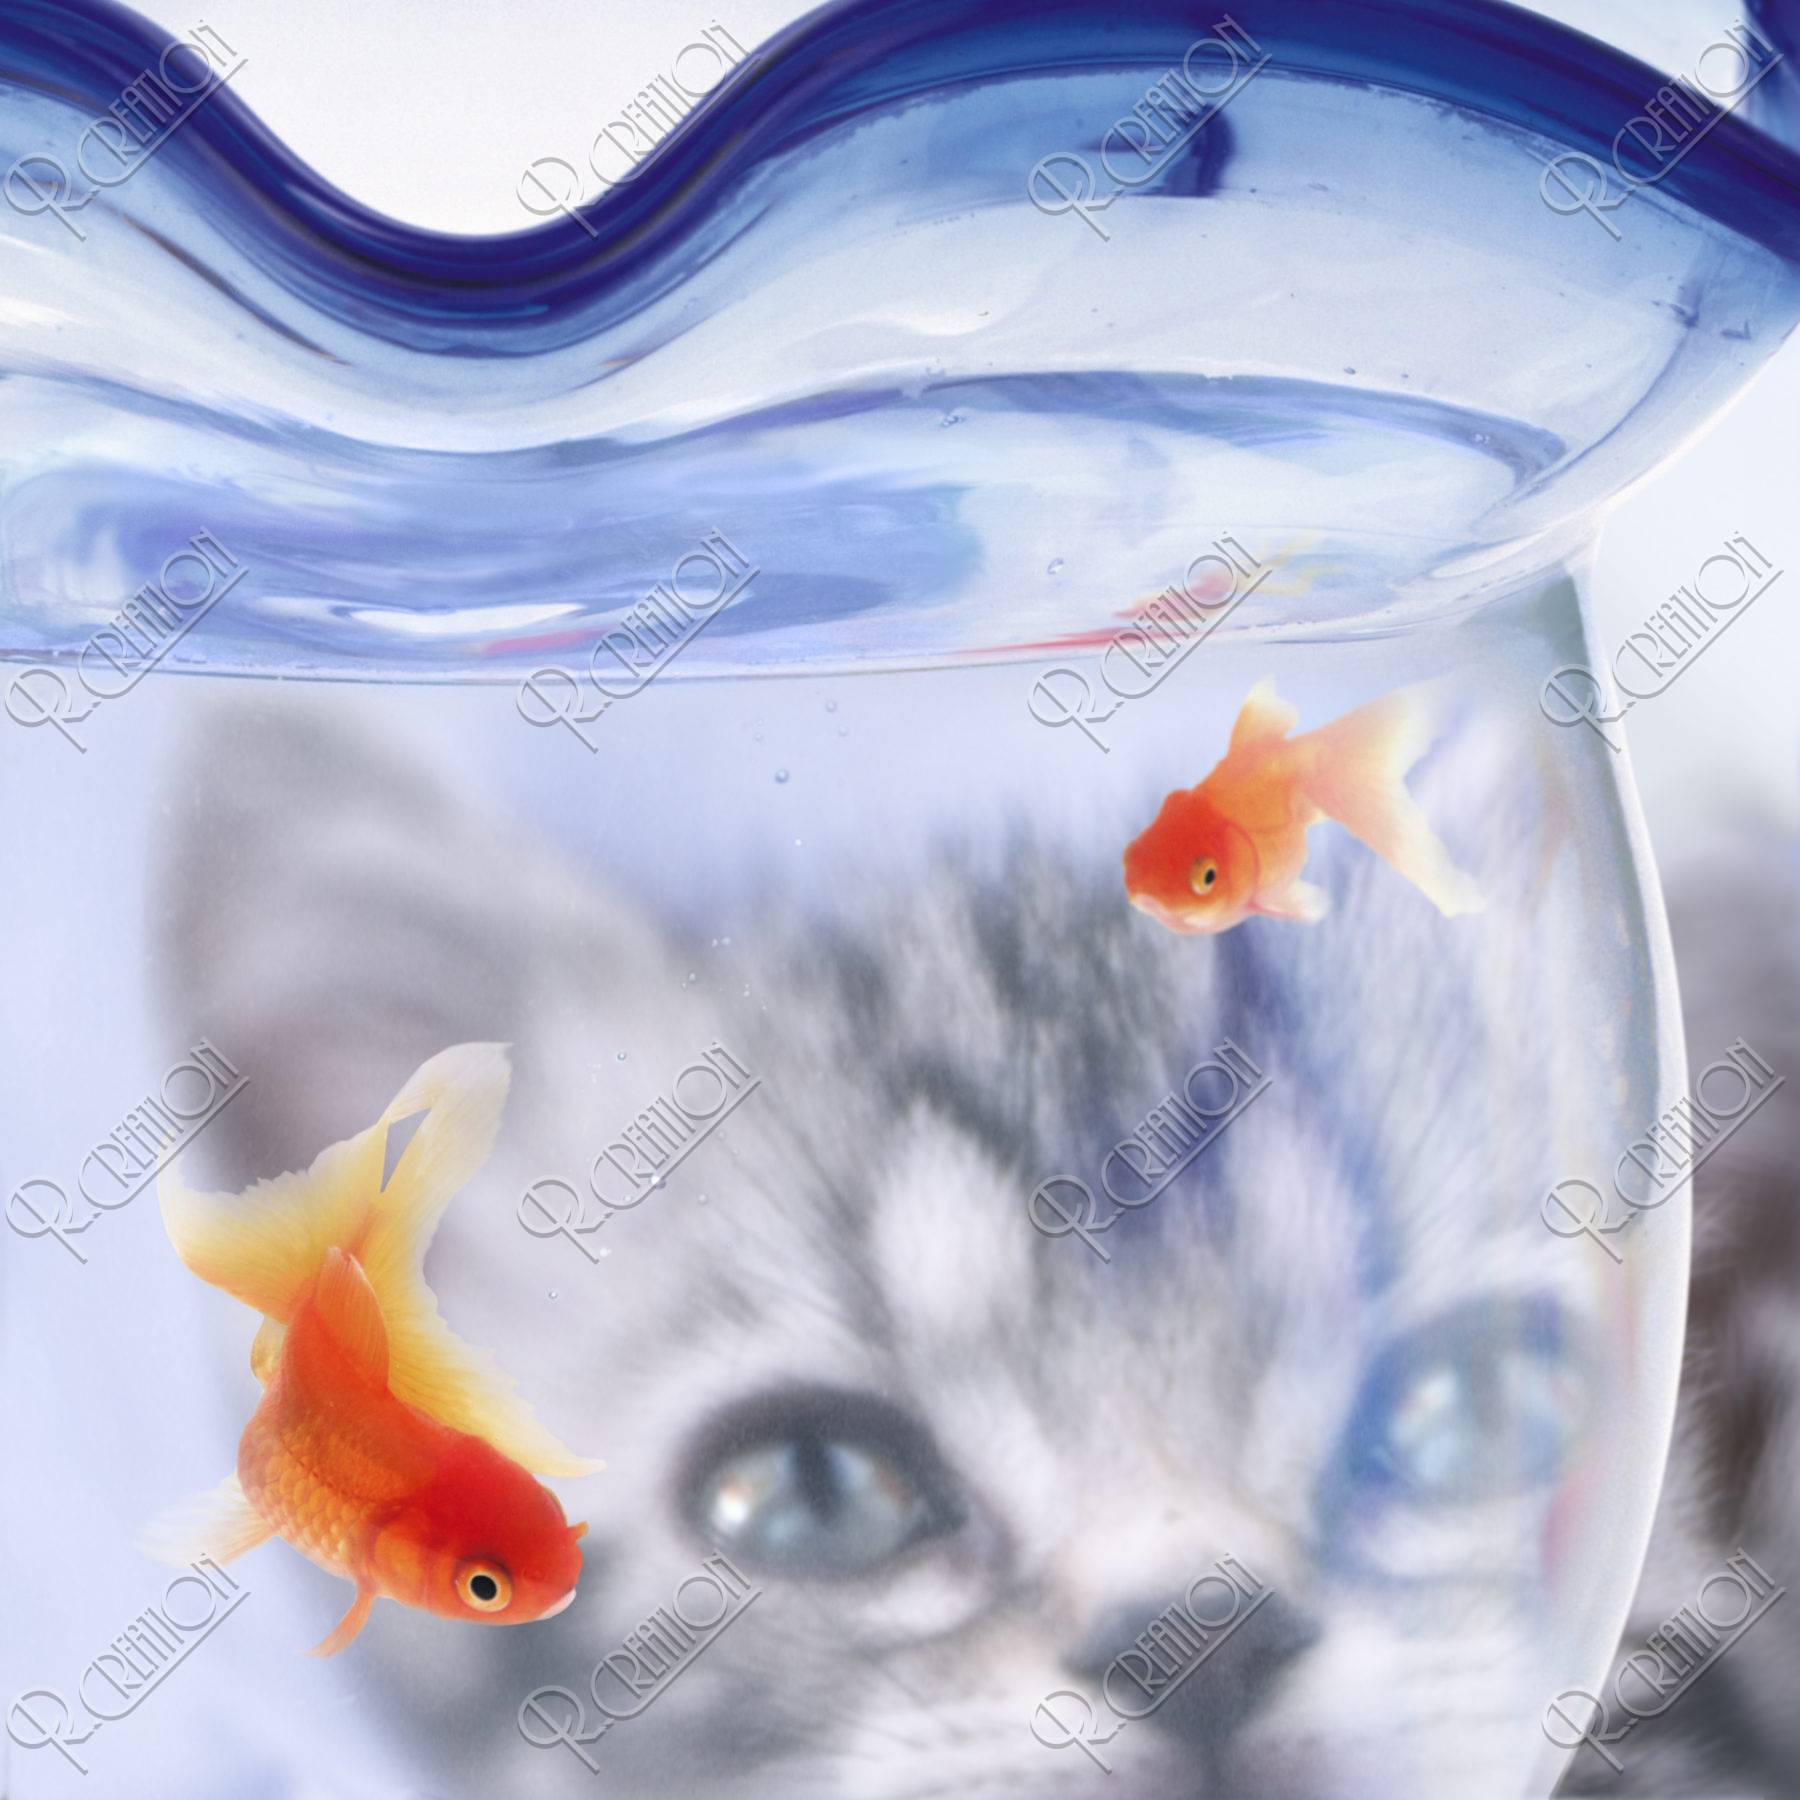 金魚 金魚鉢 猫 合成 夏イメージ アップ ストックフォト アールクリエーション